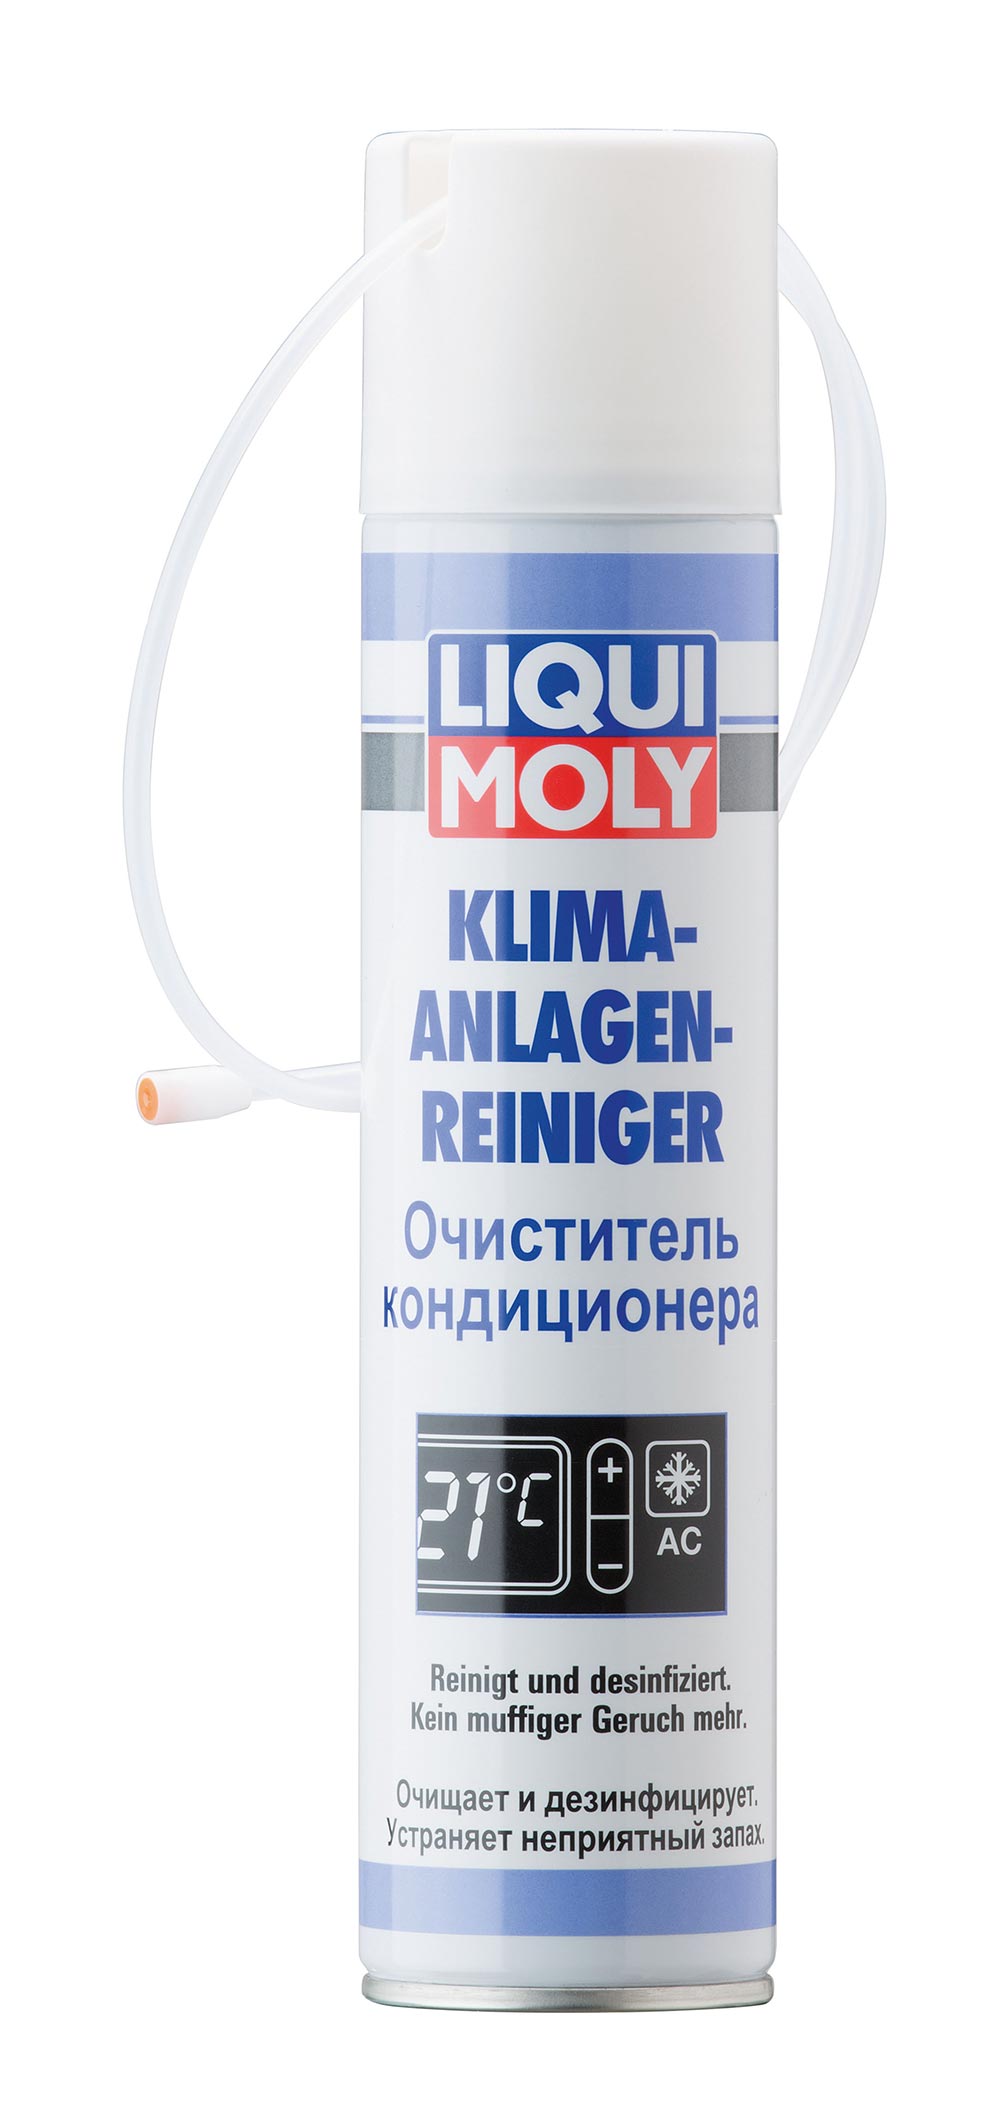 Очиститель кондиционера Klima-Anlagen-Reiniger (spray) 0.25мл